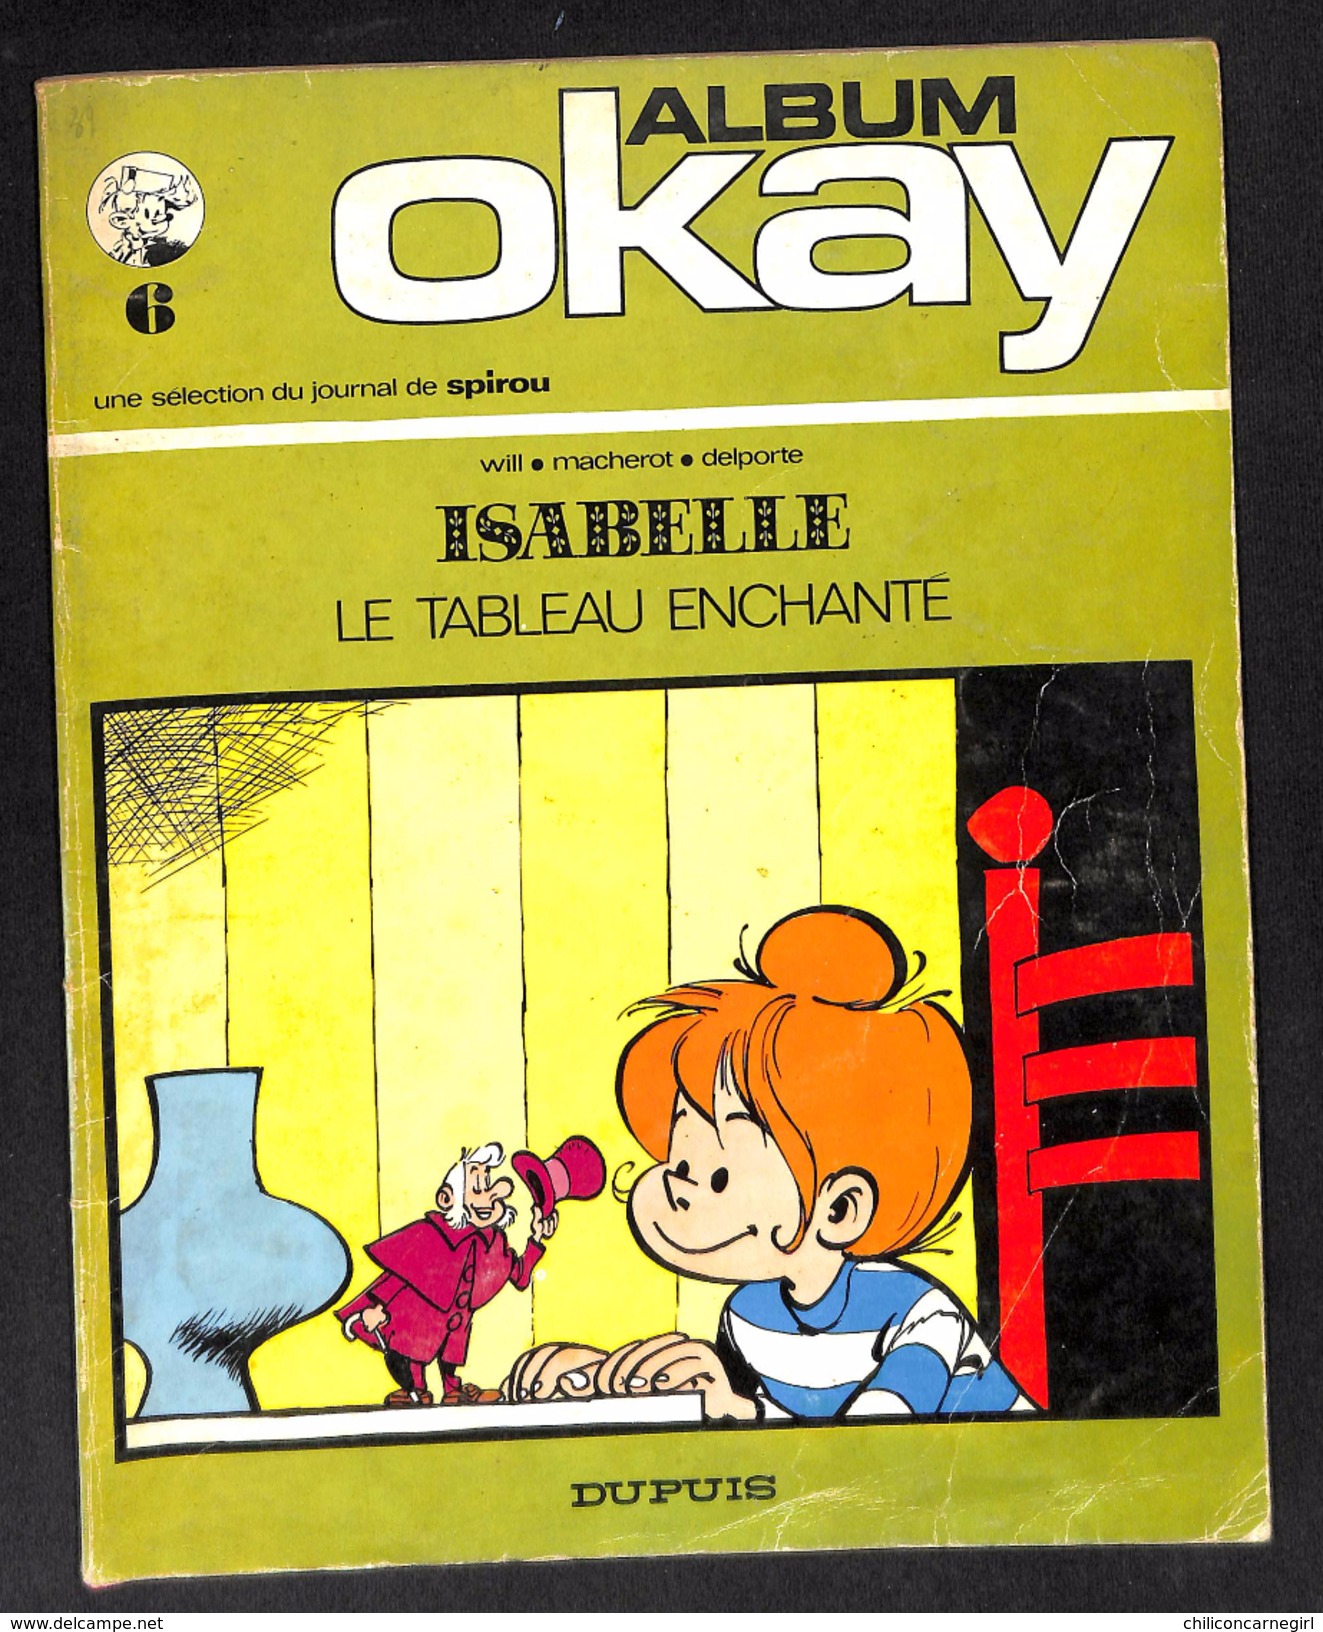 Isabelle - Le Tableau Enchanté - Album OKAY - Une Sélection Journal SPIROU - Will Macherot Delporte - DUPUIS - 1972 - Isabelle